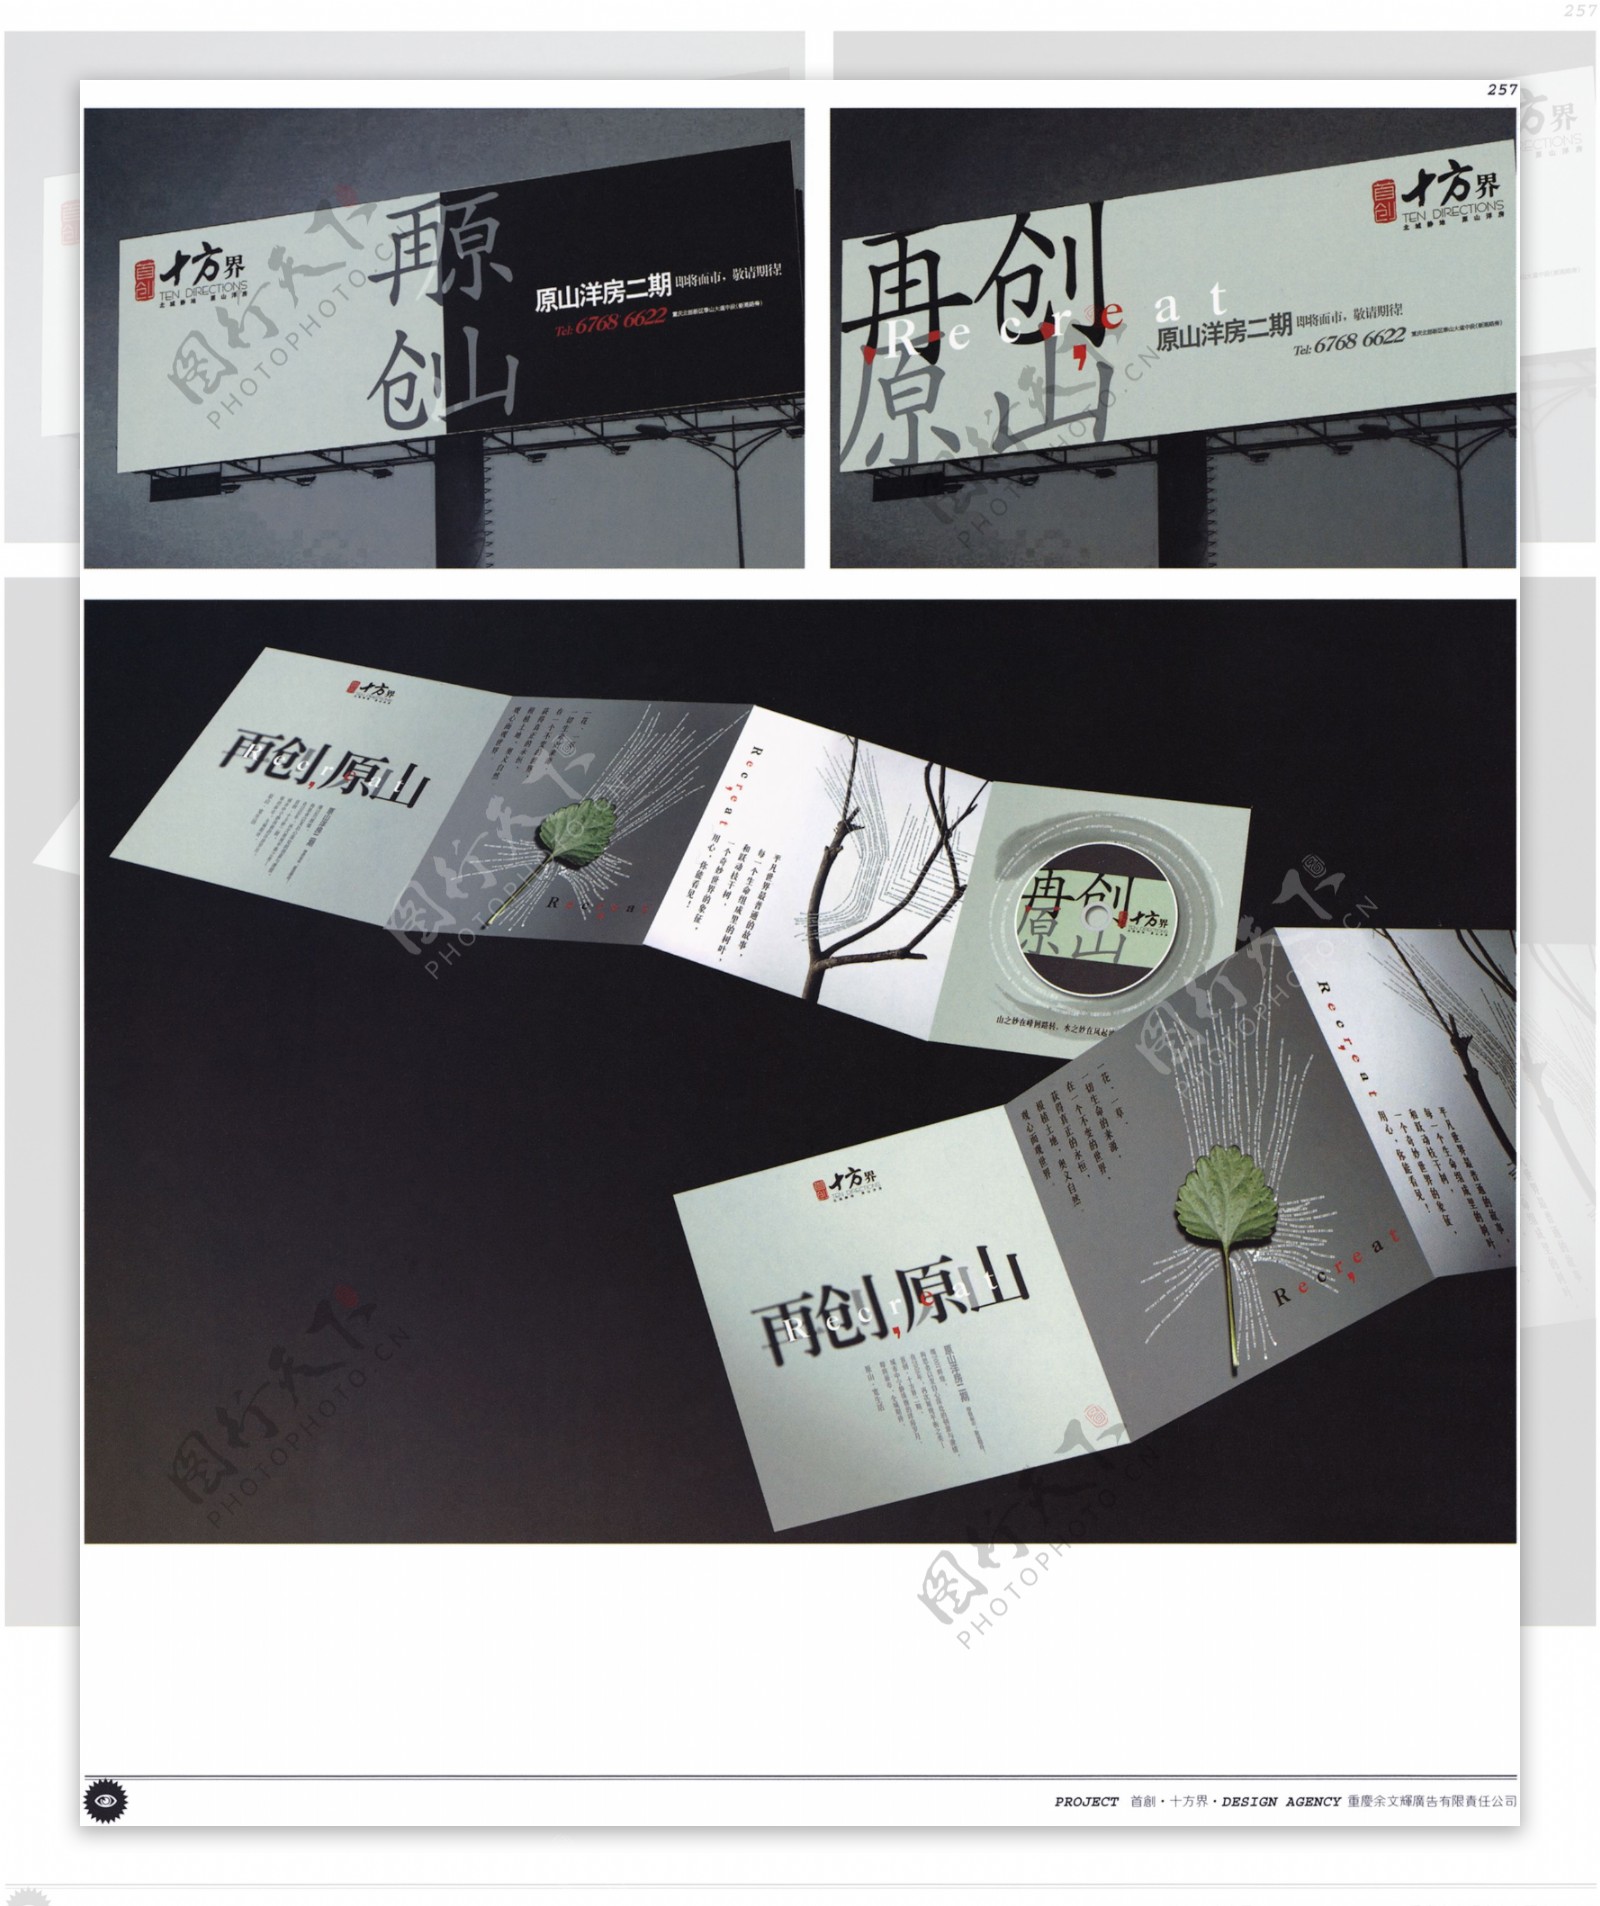 中国房地产广告年鉴第二册创意设计0252